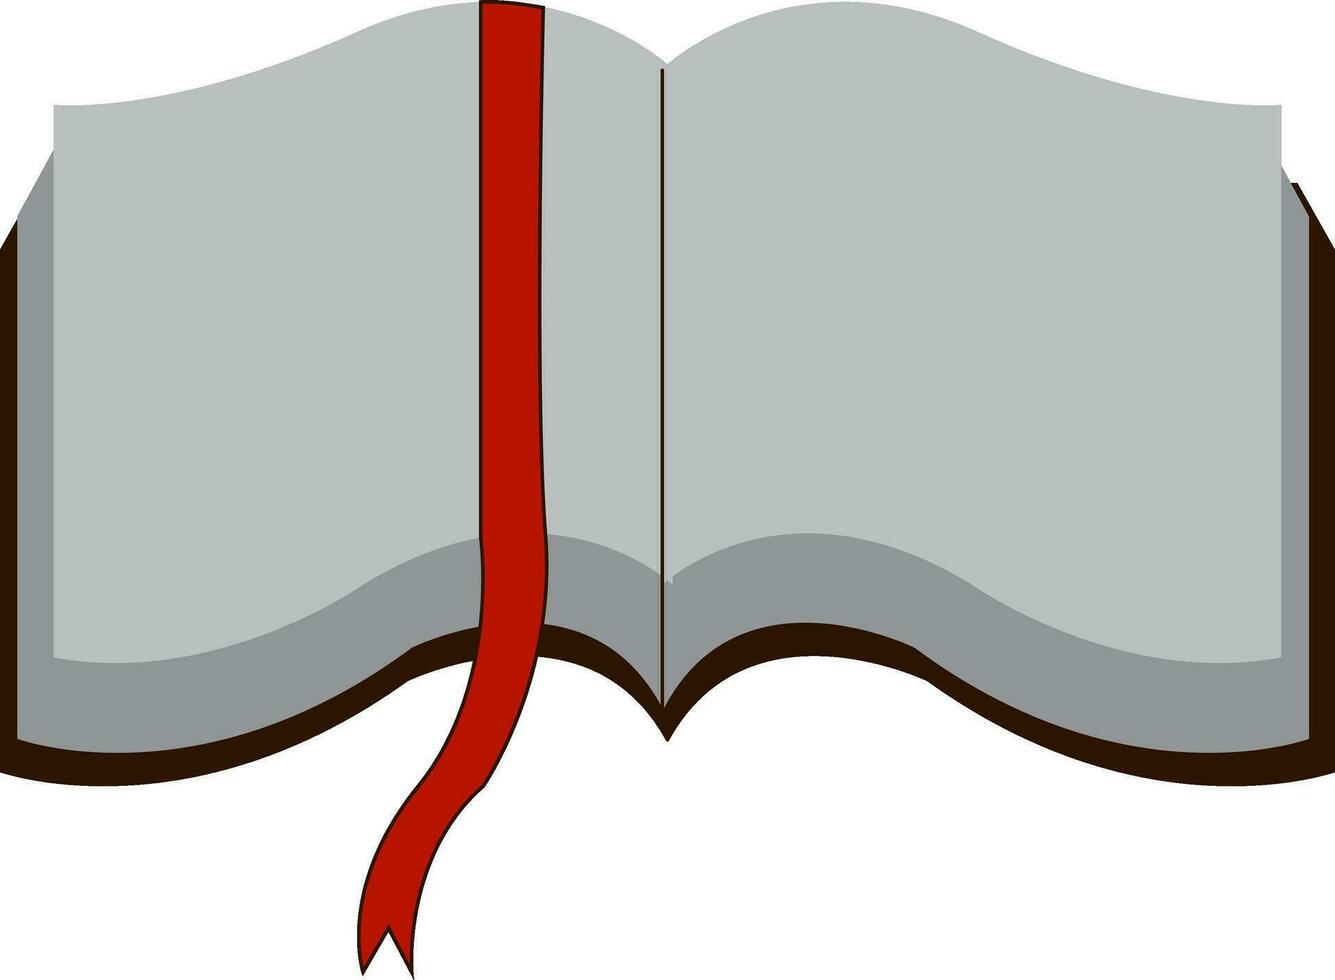 öffnen Buch mit Weiß Seiten und rot Seite Marker Vektor Illustration auf Weiß Hintergrund.